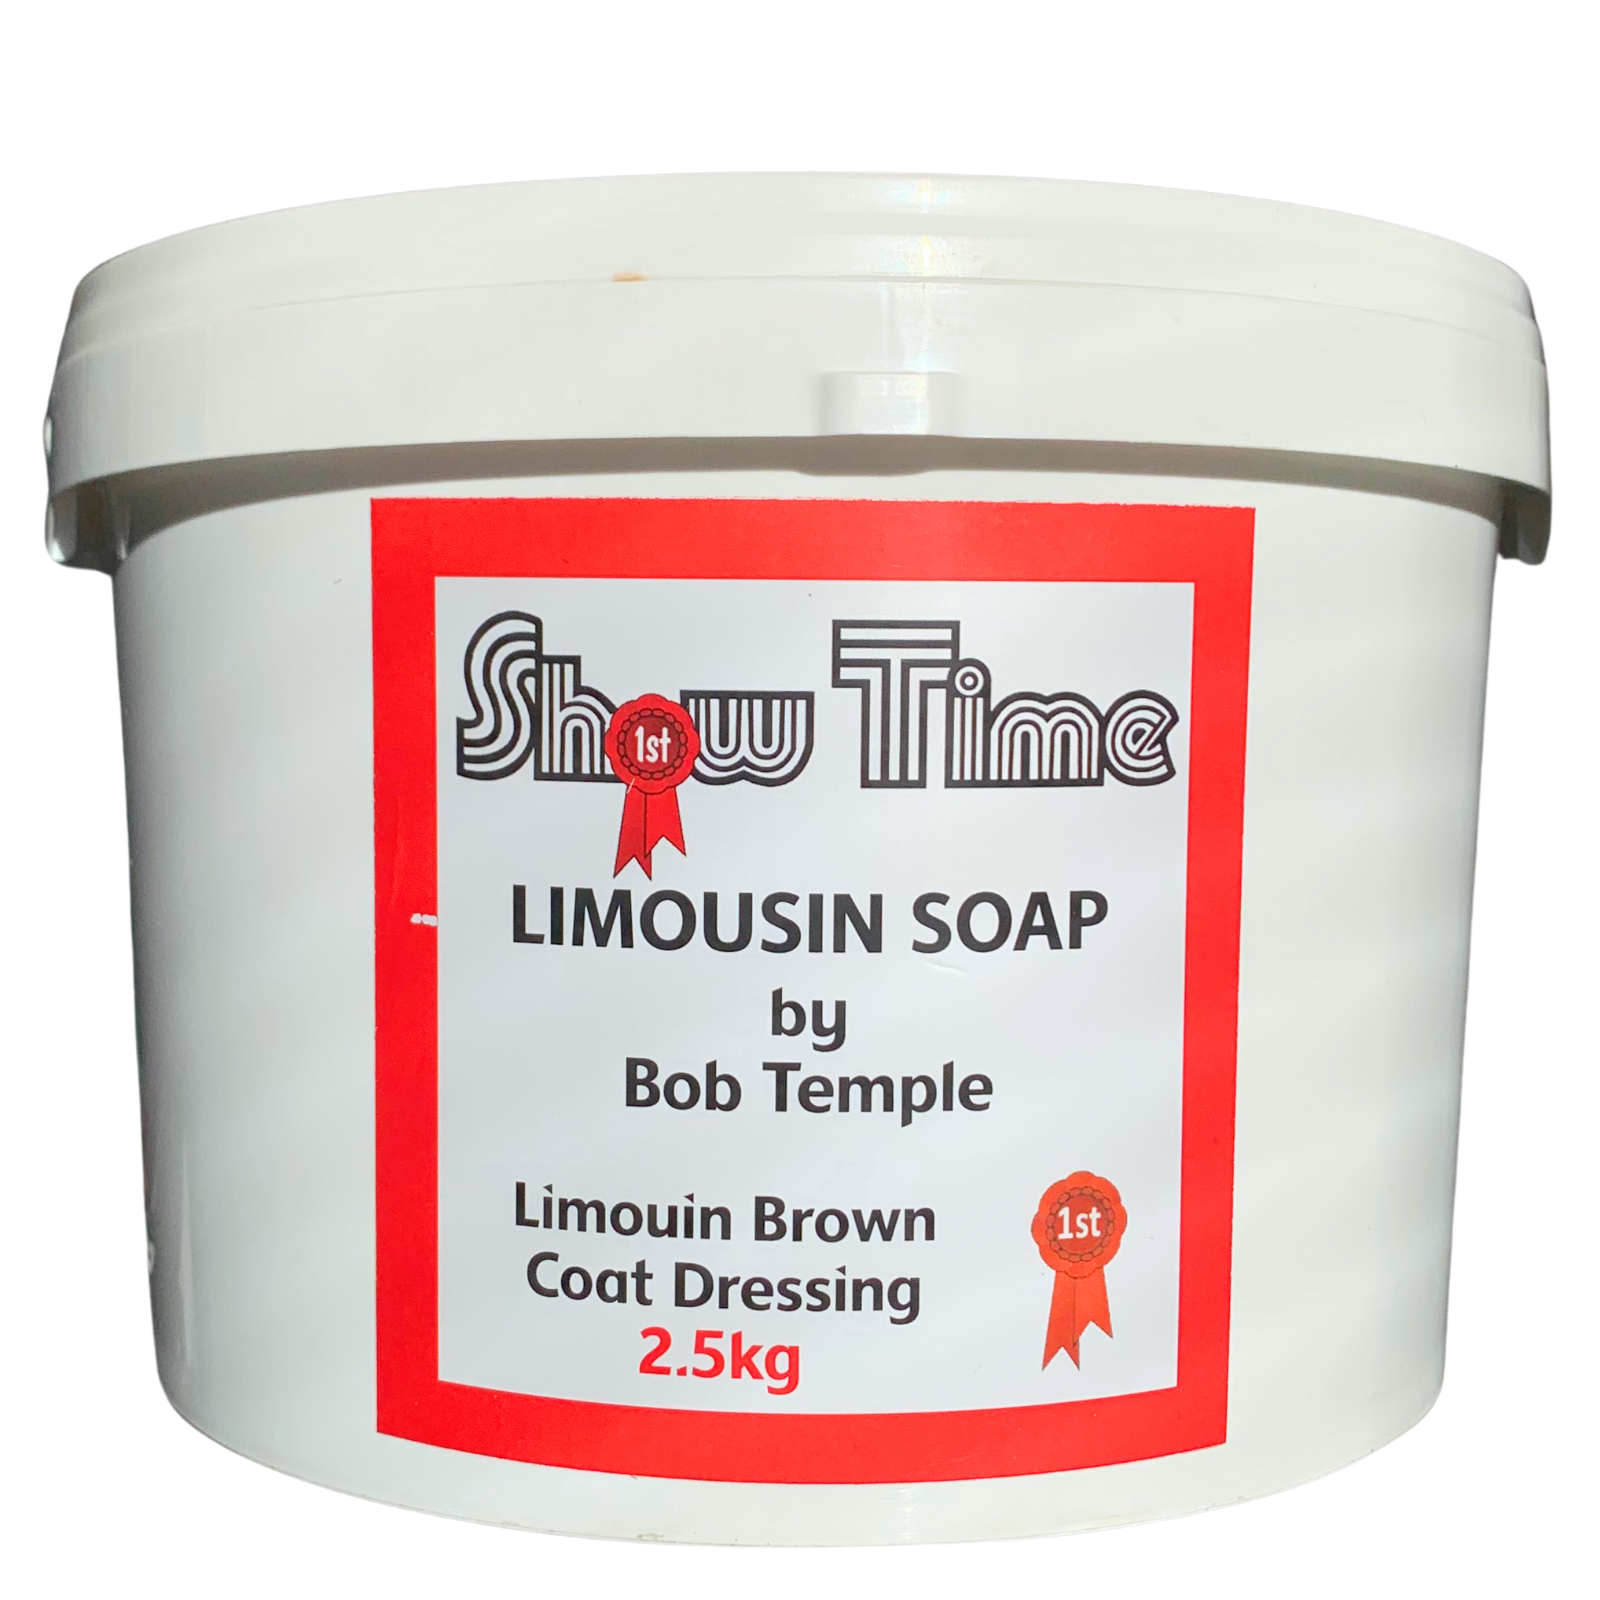 ShowTime Limousin Soap